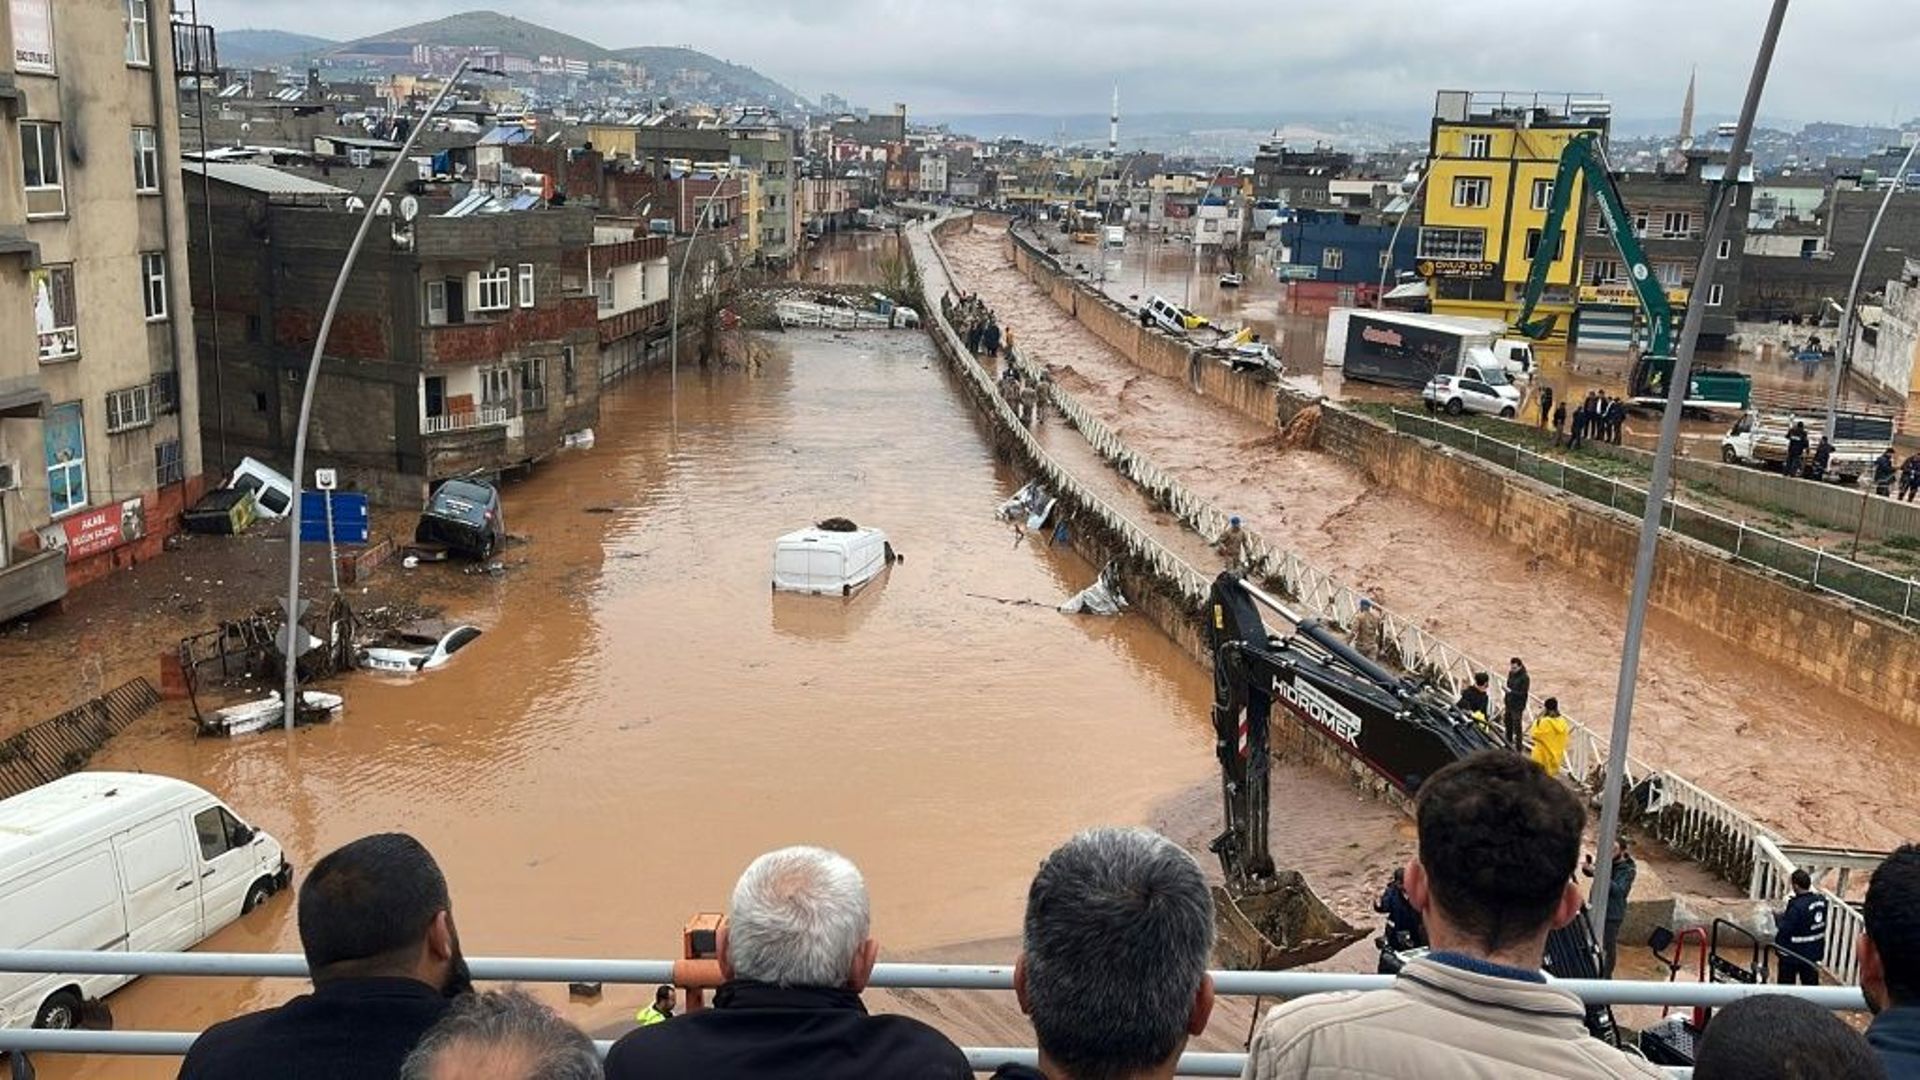 Des habitants contemplent depuis un pont les dégâts provoqués par des pluies torrentielles à Sanliurfa, grande ville turque proche de la frontière syrienne, le 15 mars 2023